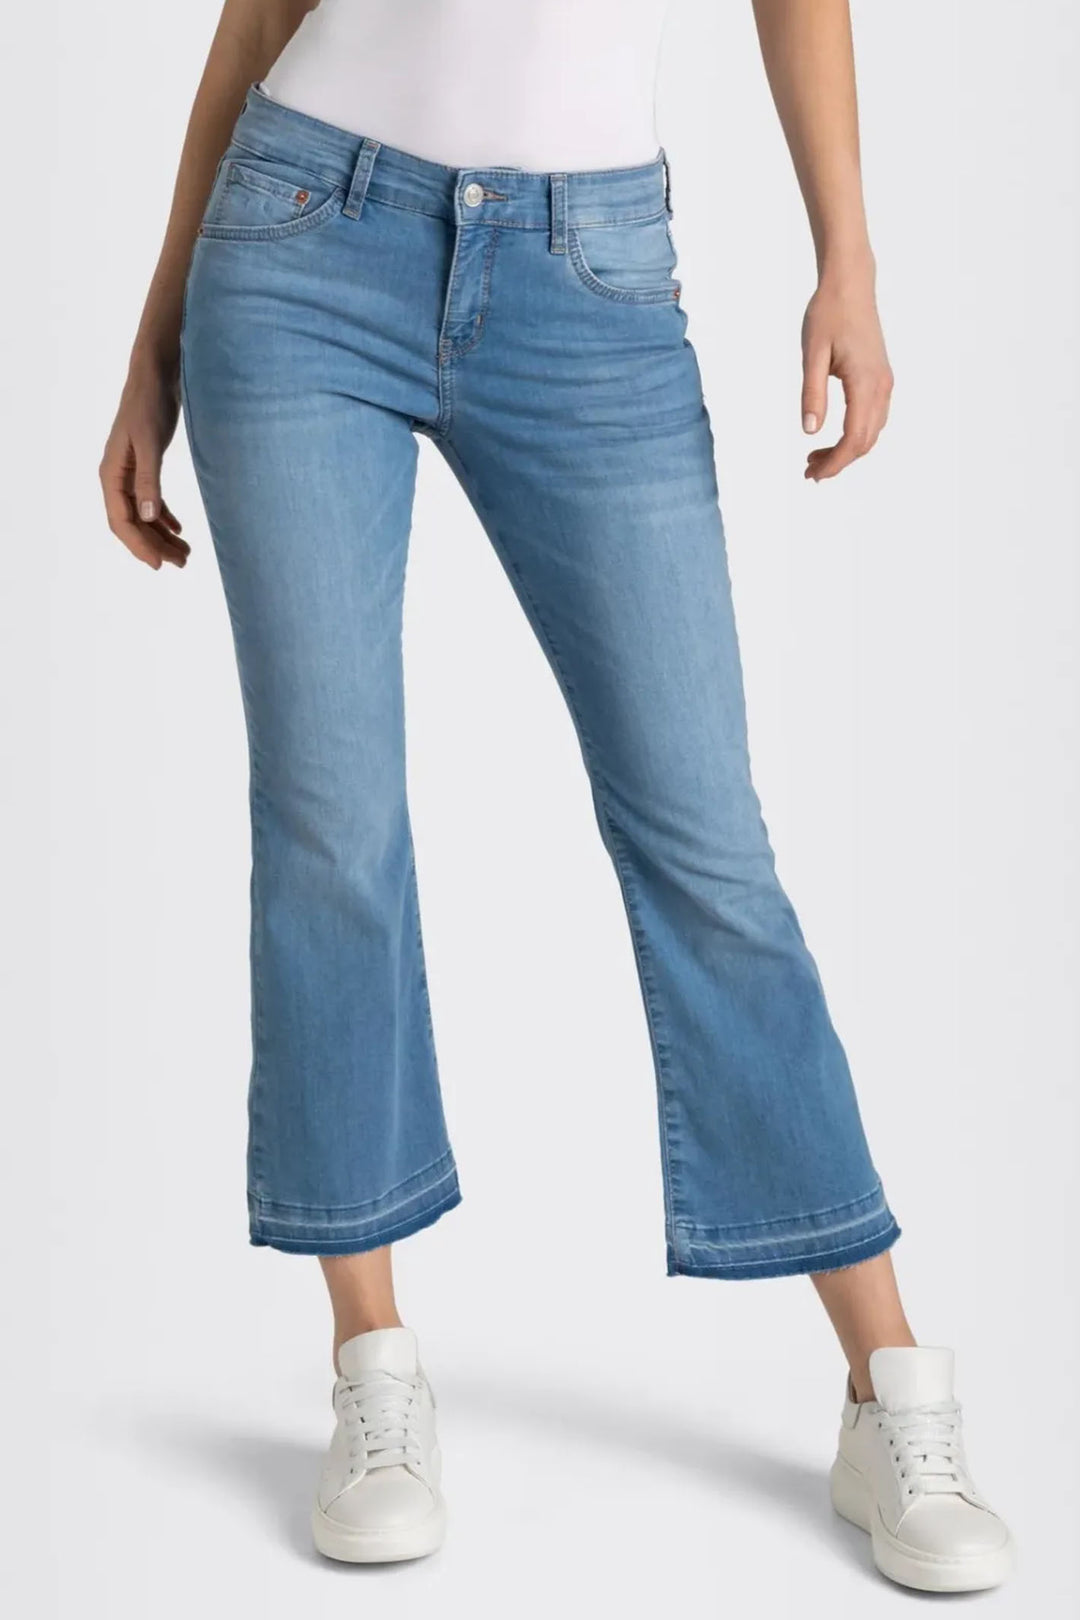 Mac 5437-90-0351 D490 Dream Kick Summer Mid Blue Light Denim Jeans - Olivia Grace Fashion